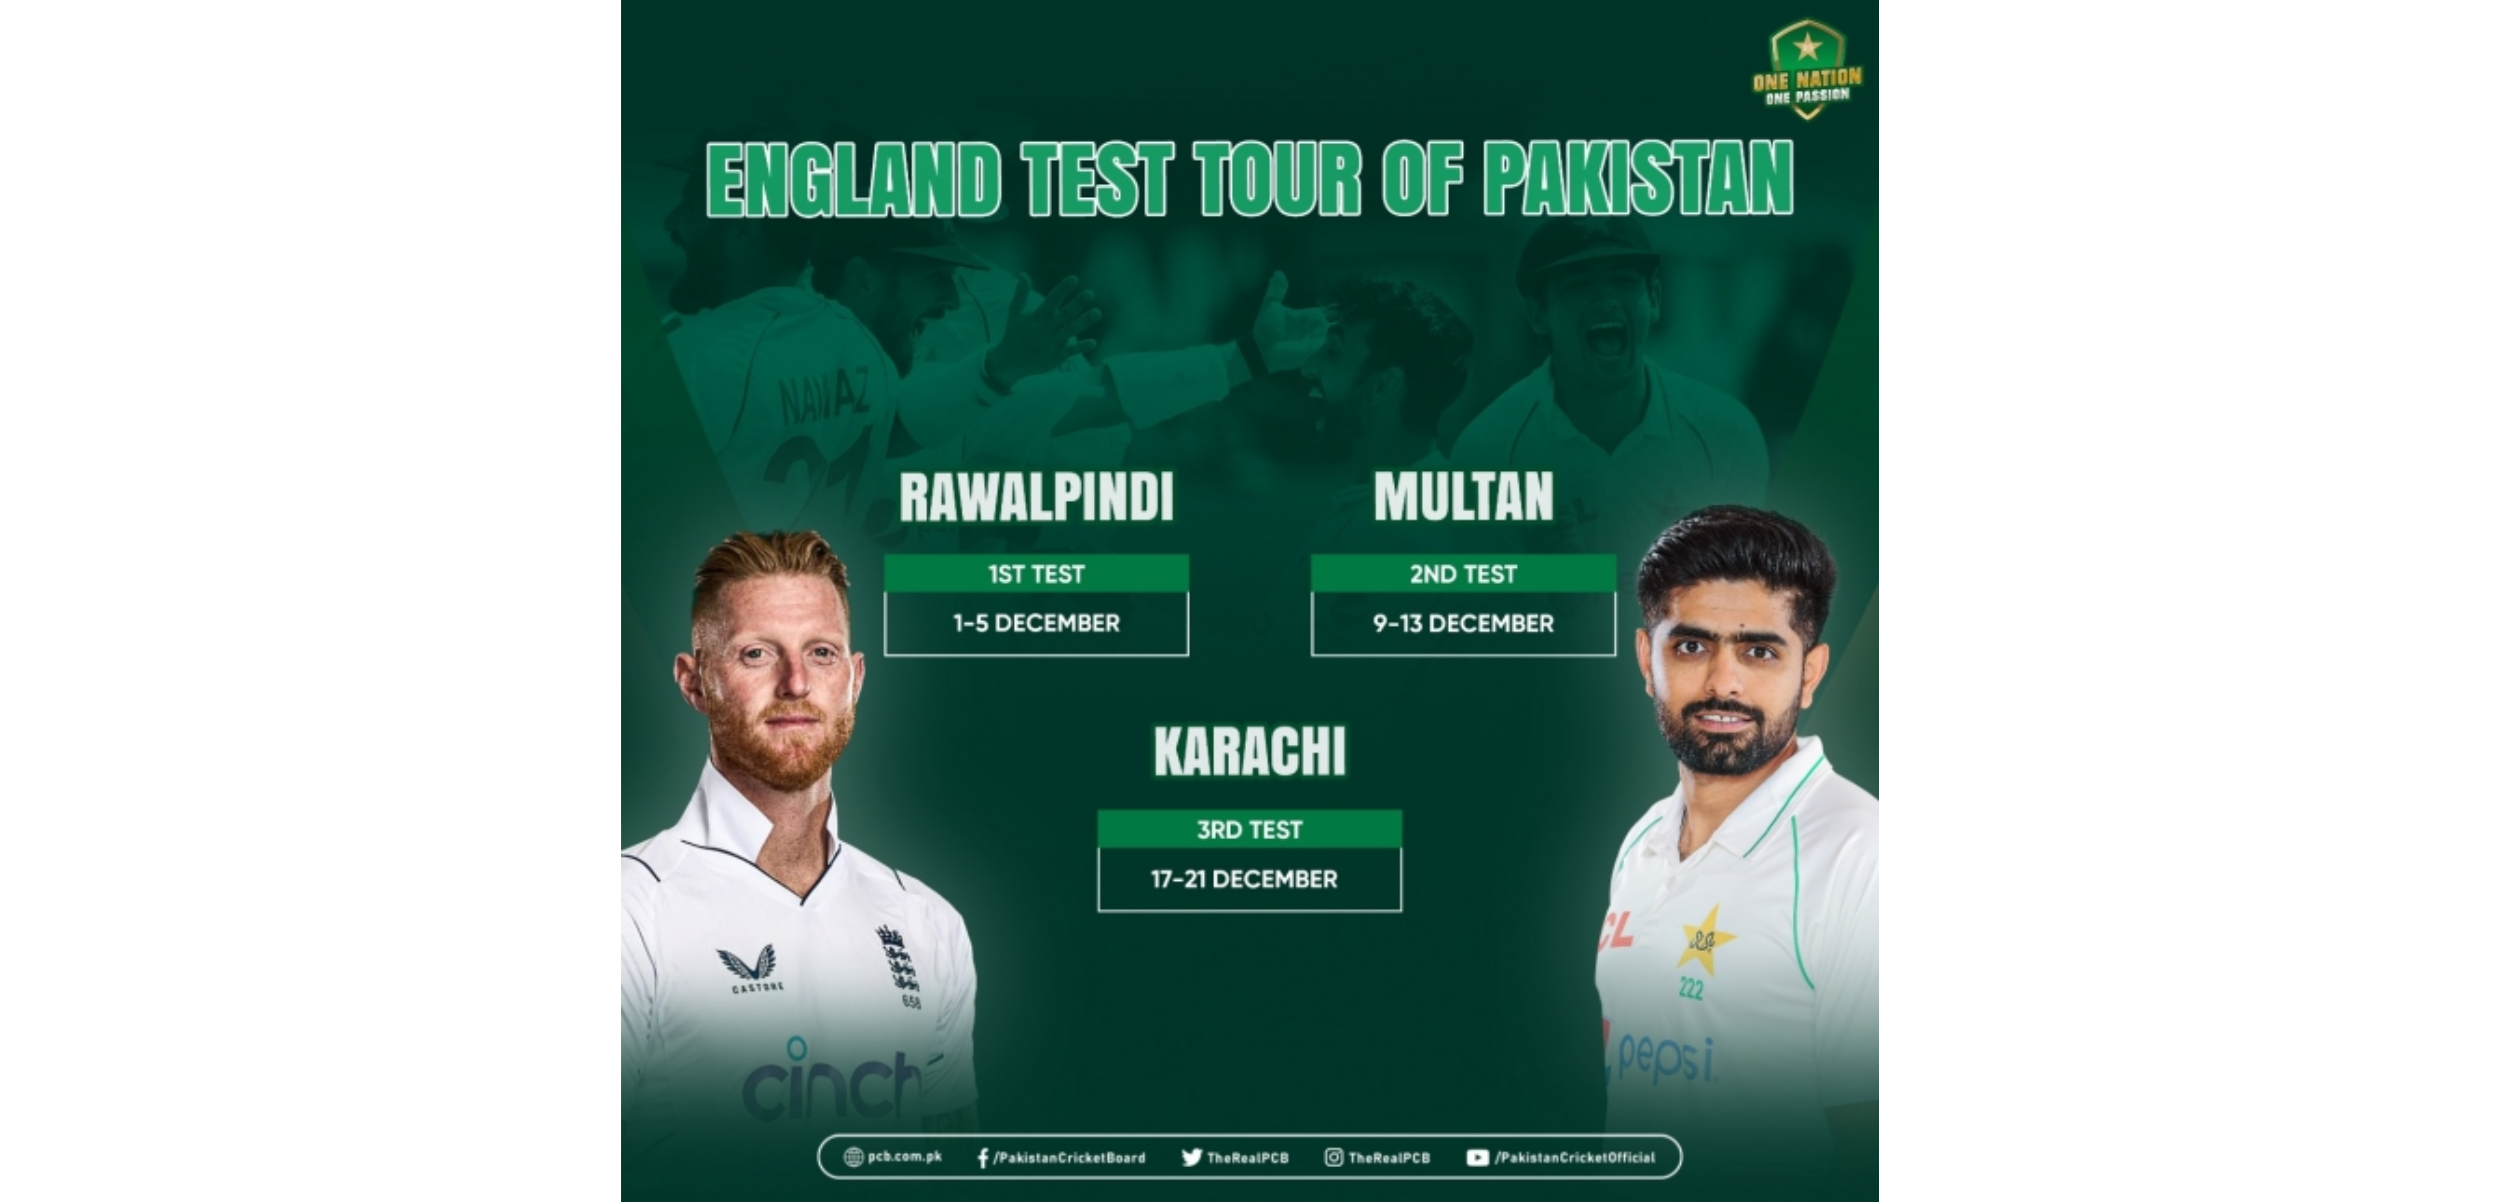 PCB confirms details of England's Test tour of Pakistan